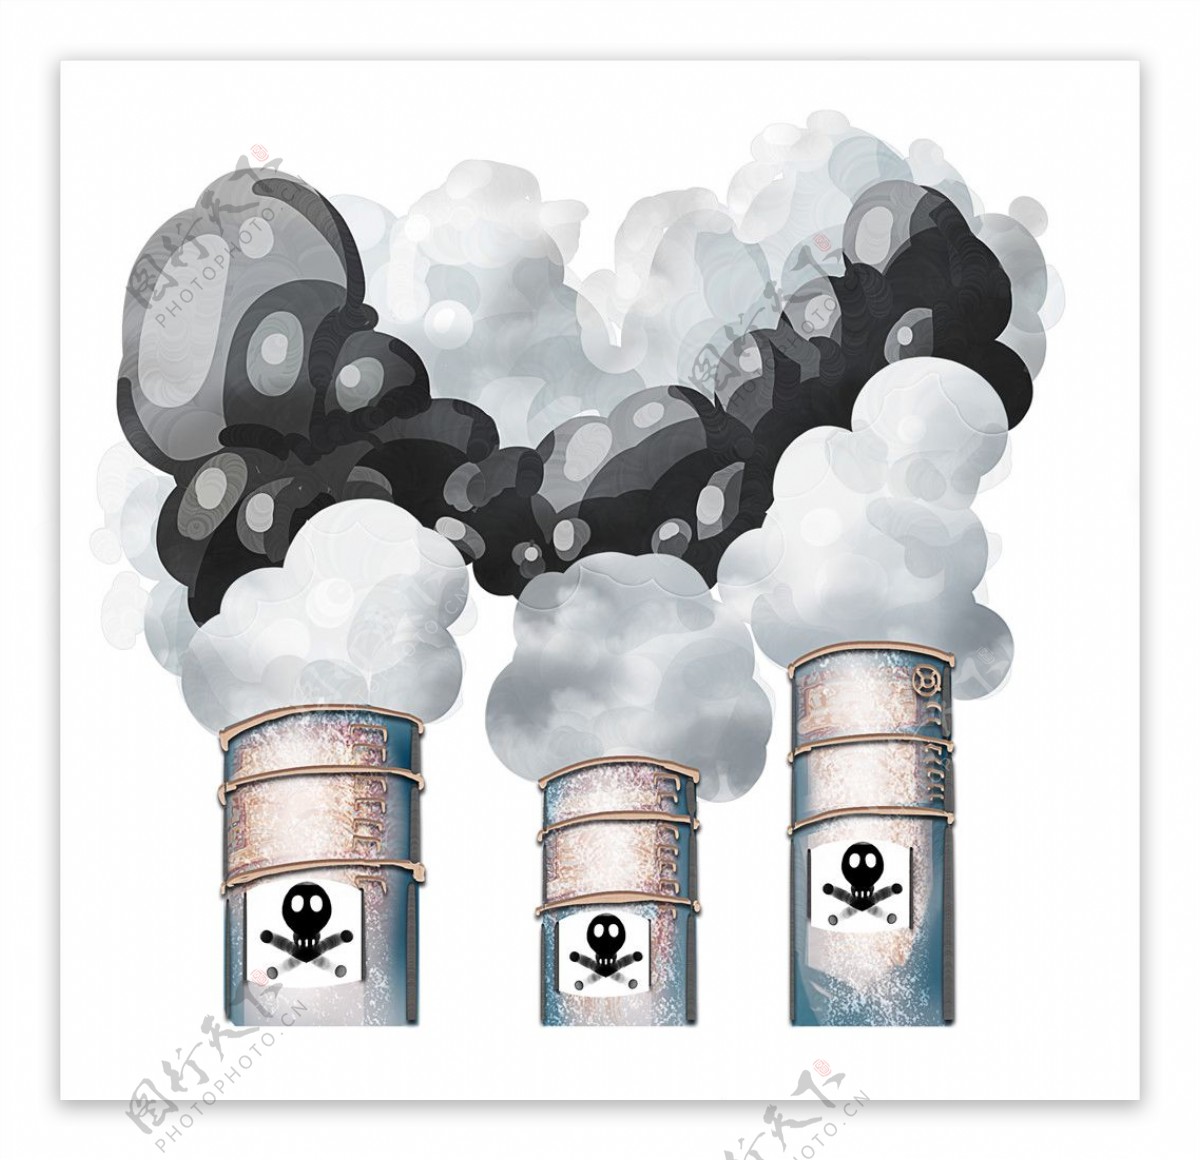 大气污染工厂冒烟插画图片